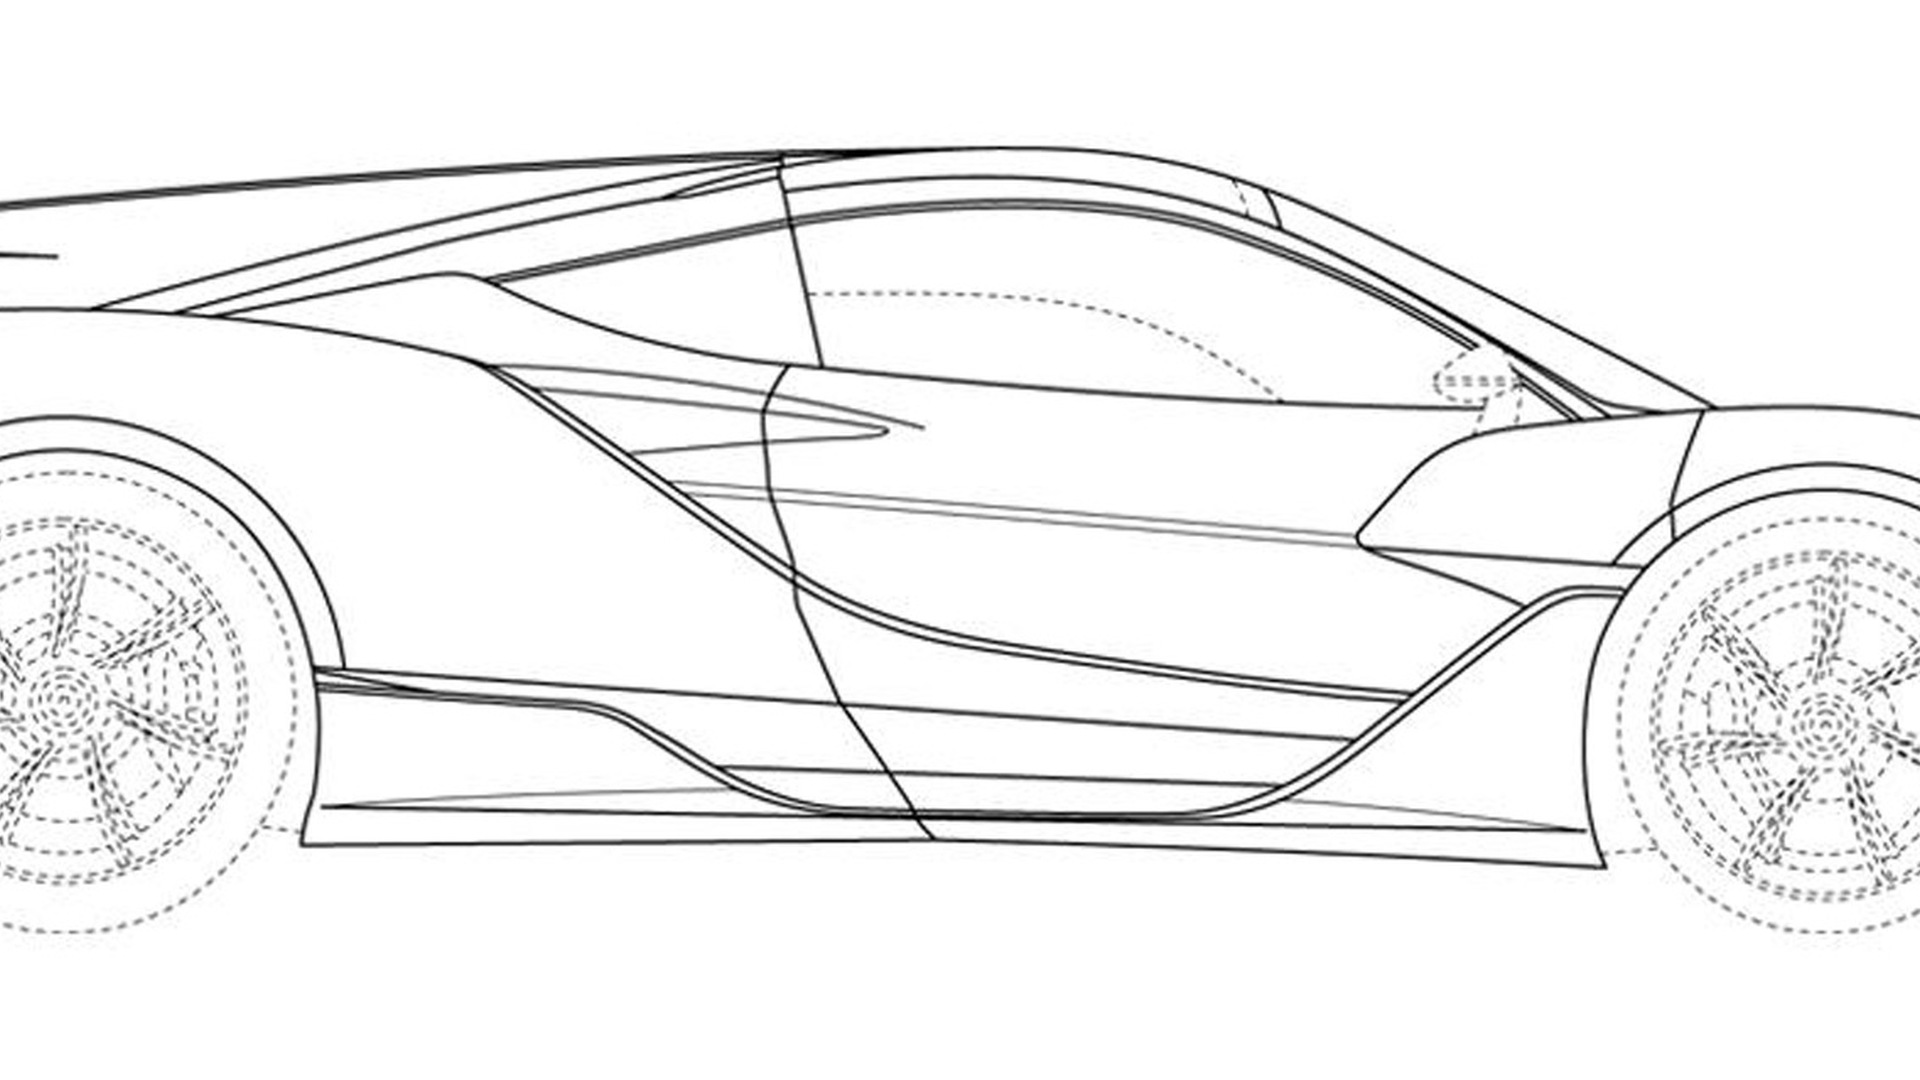 Patent drawings of possible McLaren supercar - Photo credit: Taycan EV Forum/J-PlatPat